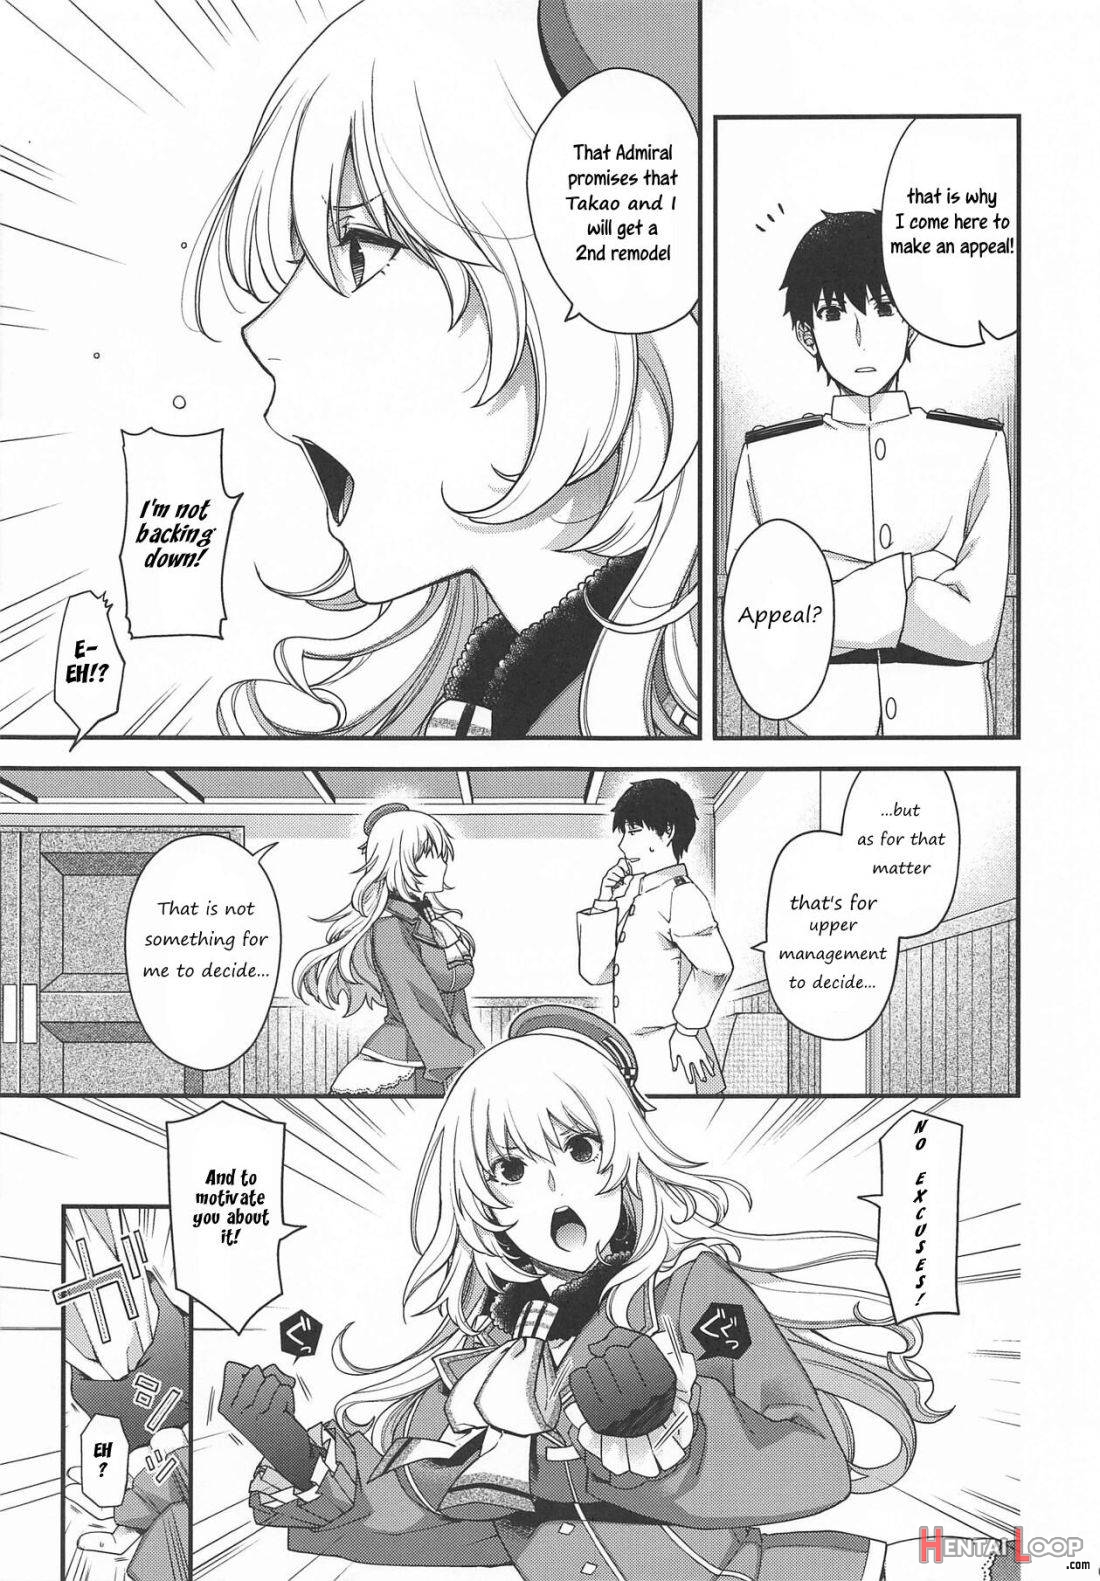 Onegai Teitoku! page 5